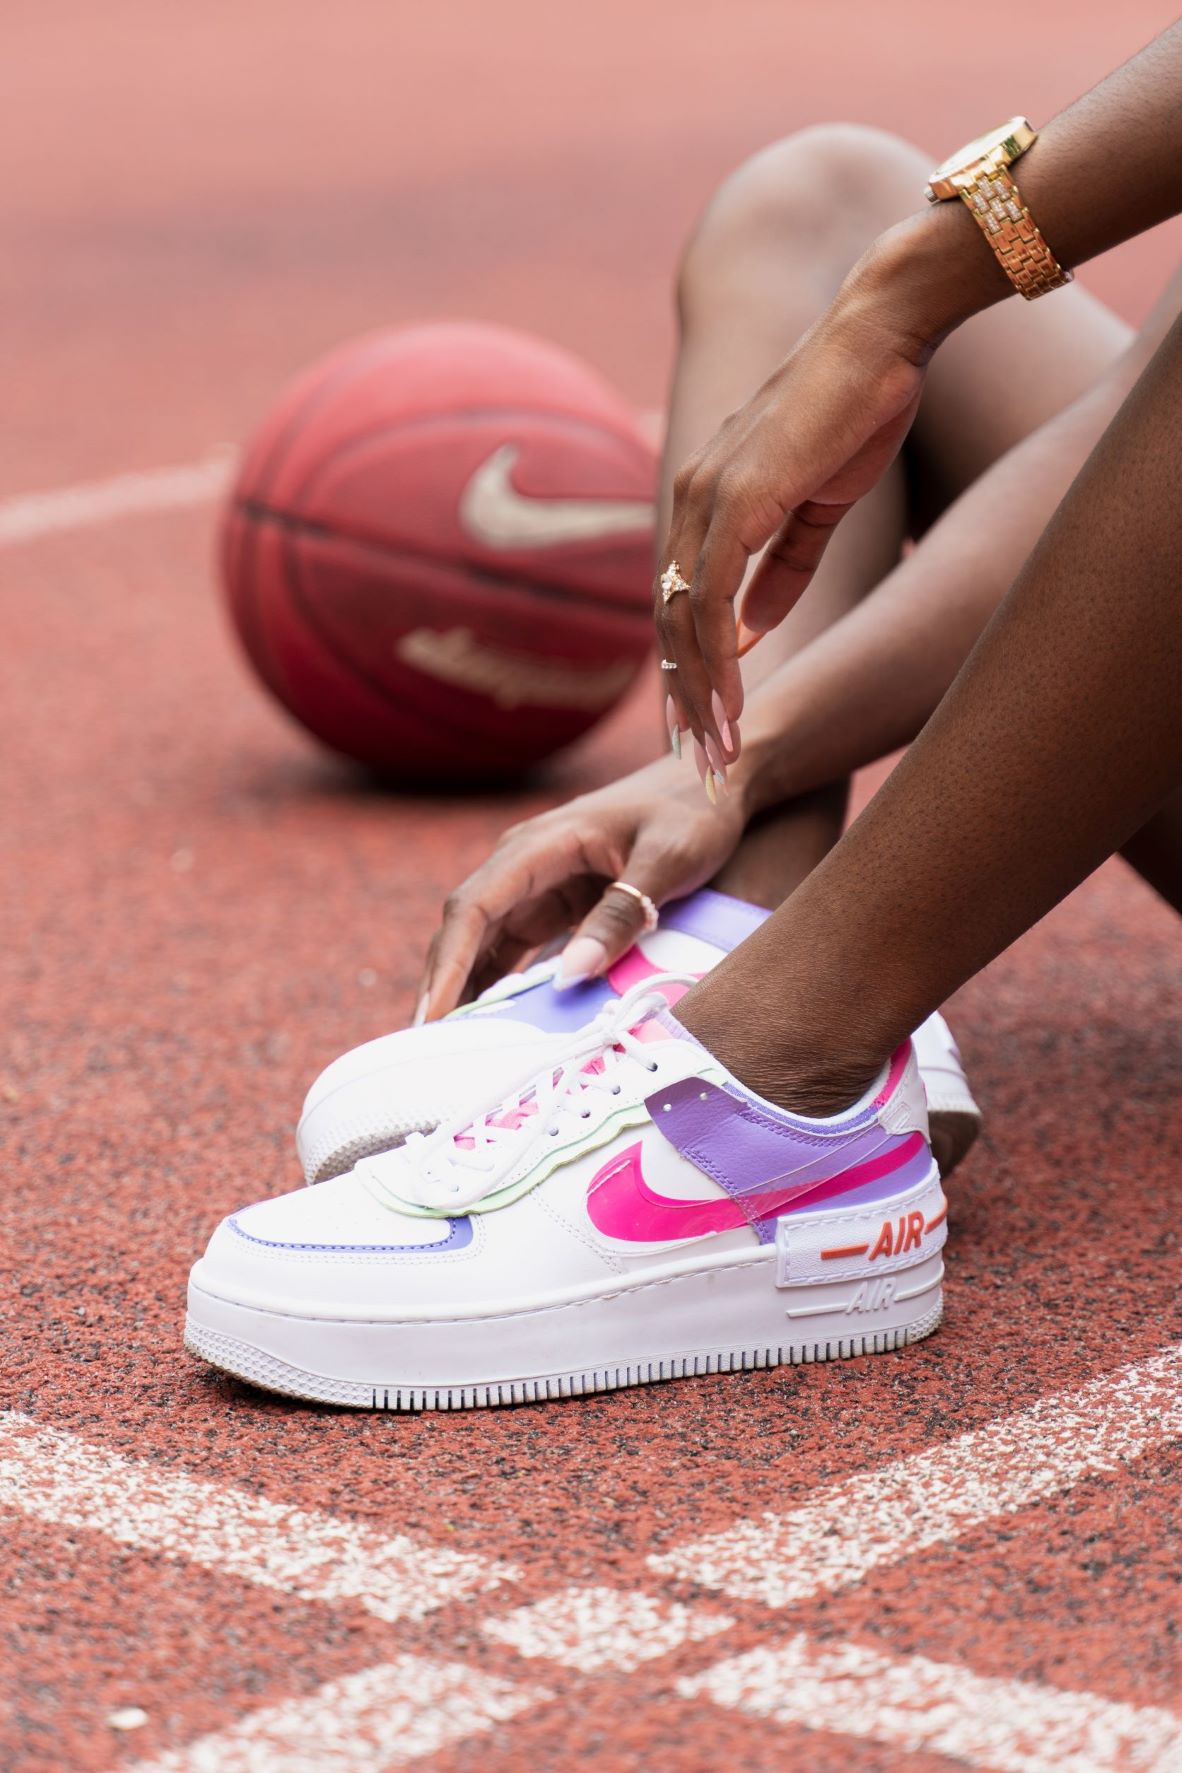 giay the thao unsplash 21 - Có cần đi giày thể thao khi tập luyện tại nhà?